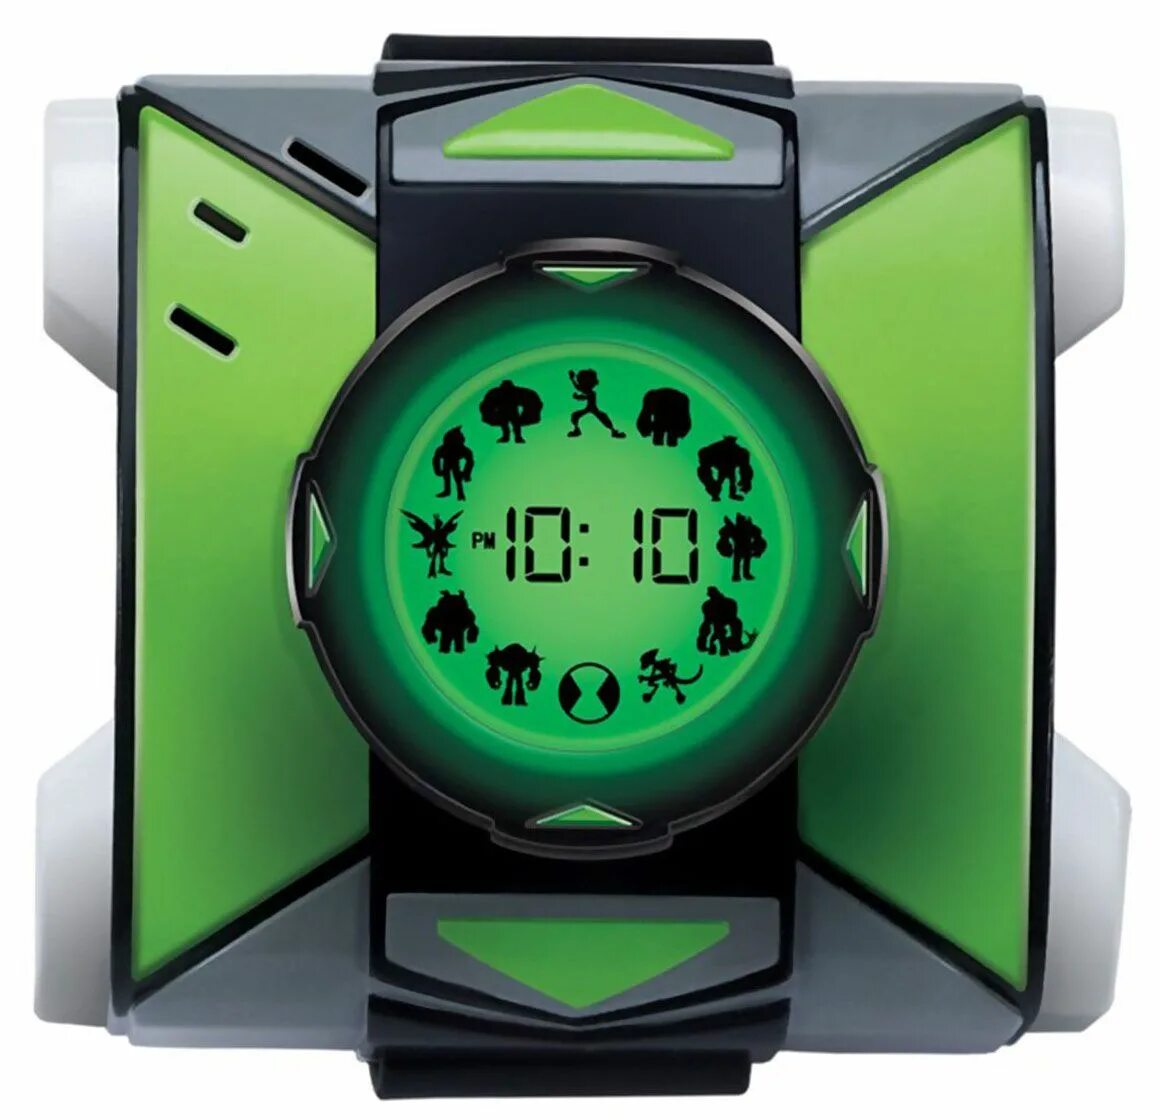 Электронные часы обзор. Часы ben10 Омнитрикс. Ben 10 Omnitrix часы. Часы ben10 Омнитрикс (Делюкс). Бен 10 Омнитрикс игрушка.